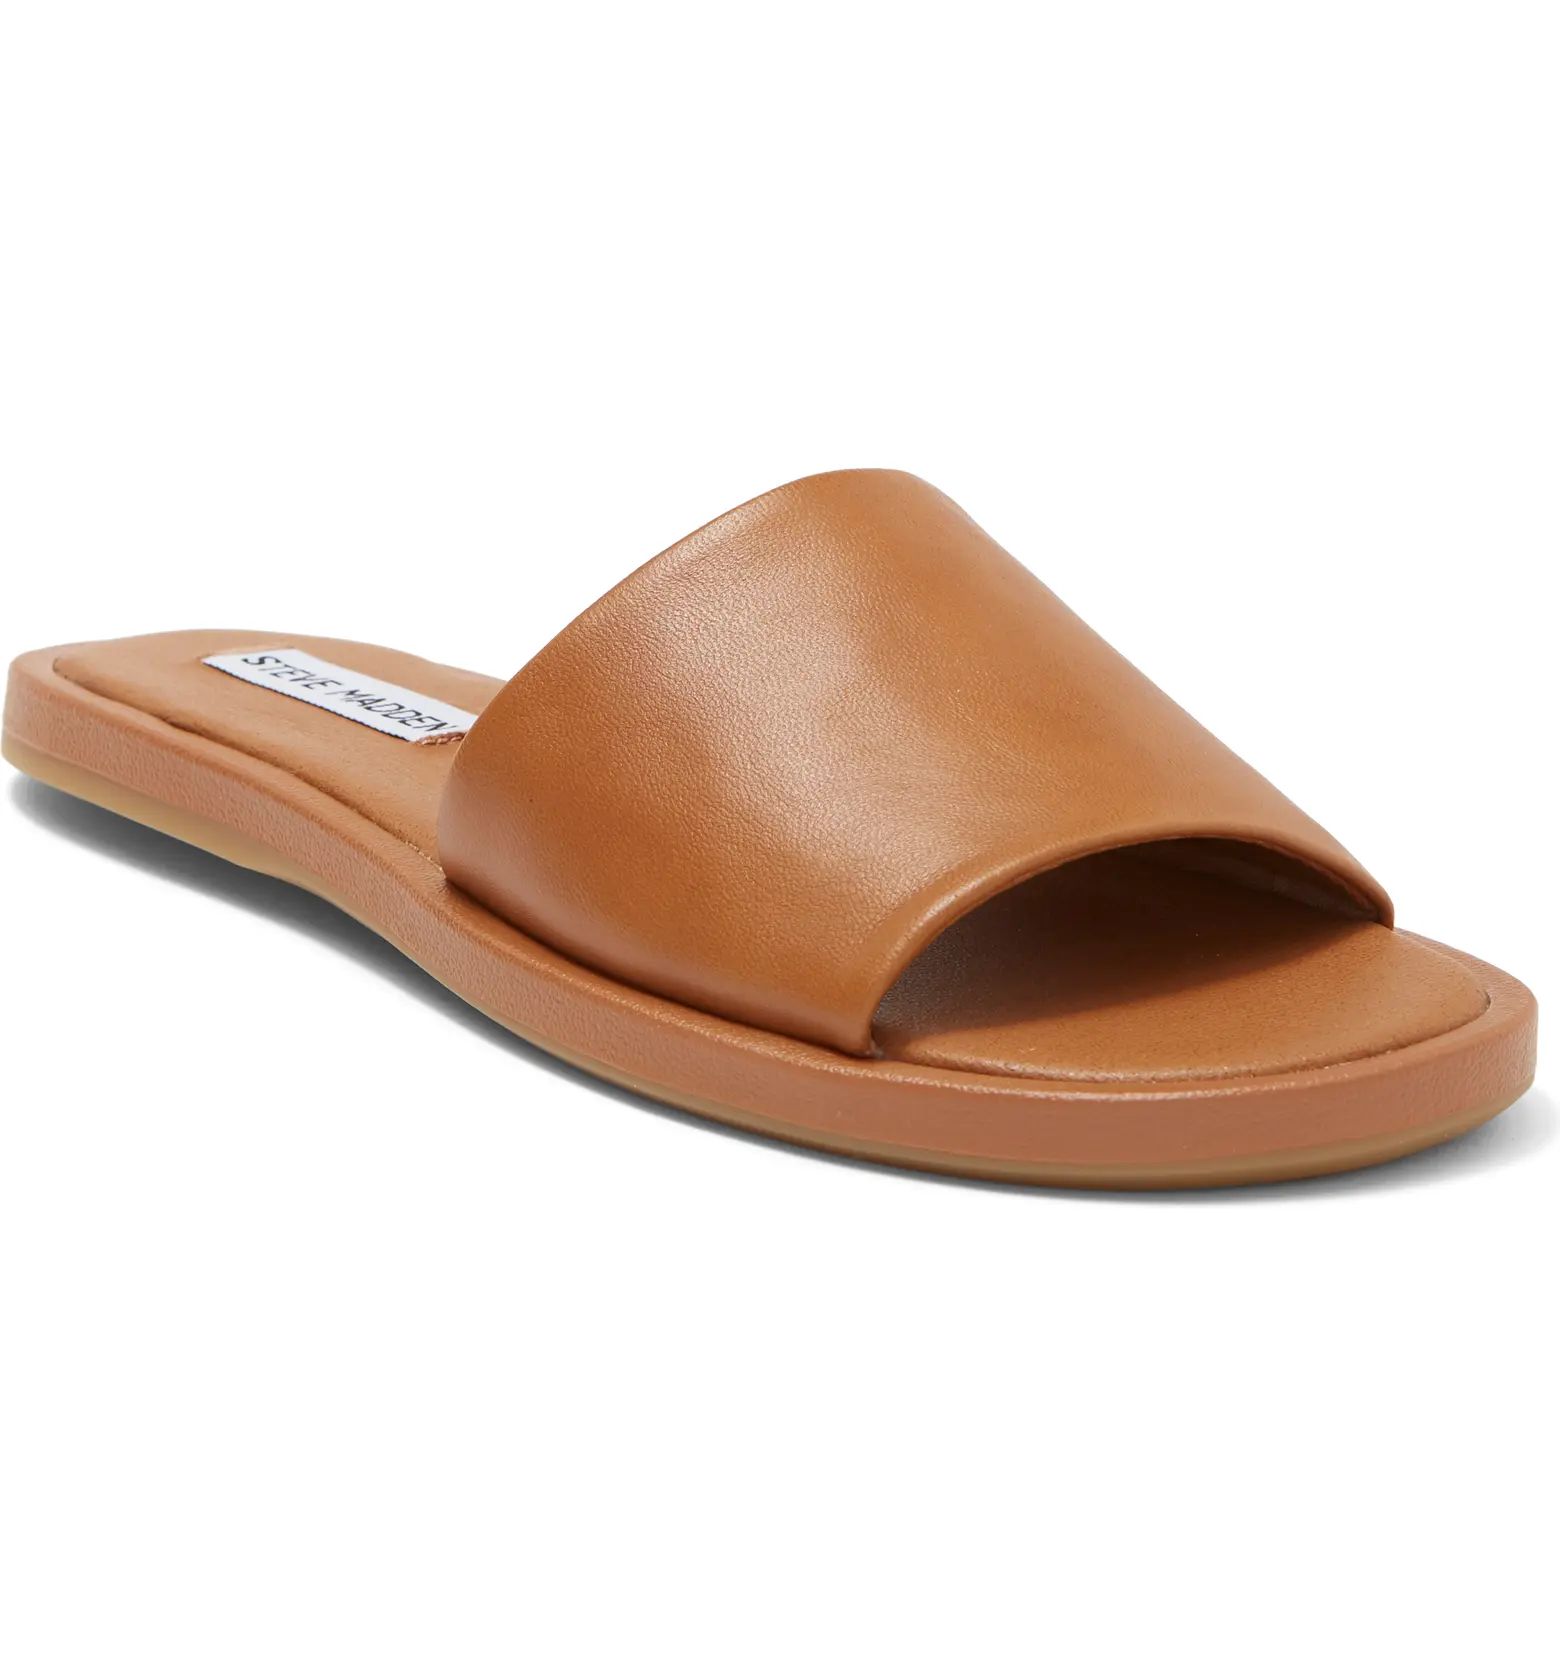 Fortunate Leather Slide Sandal | Nordstrom Rack